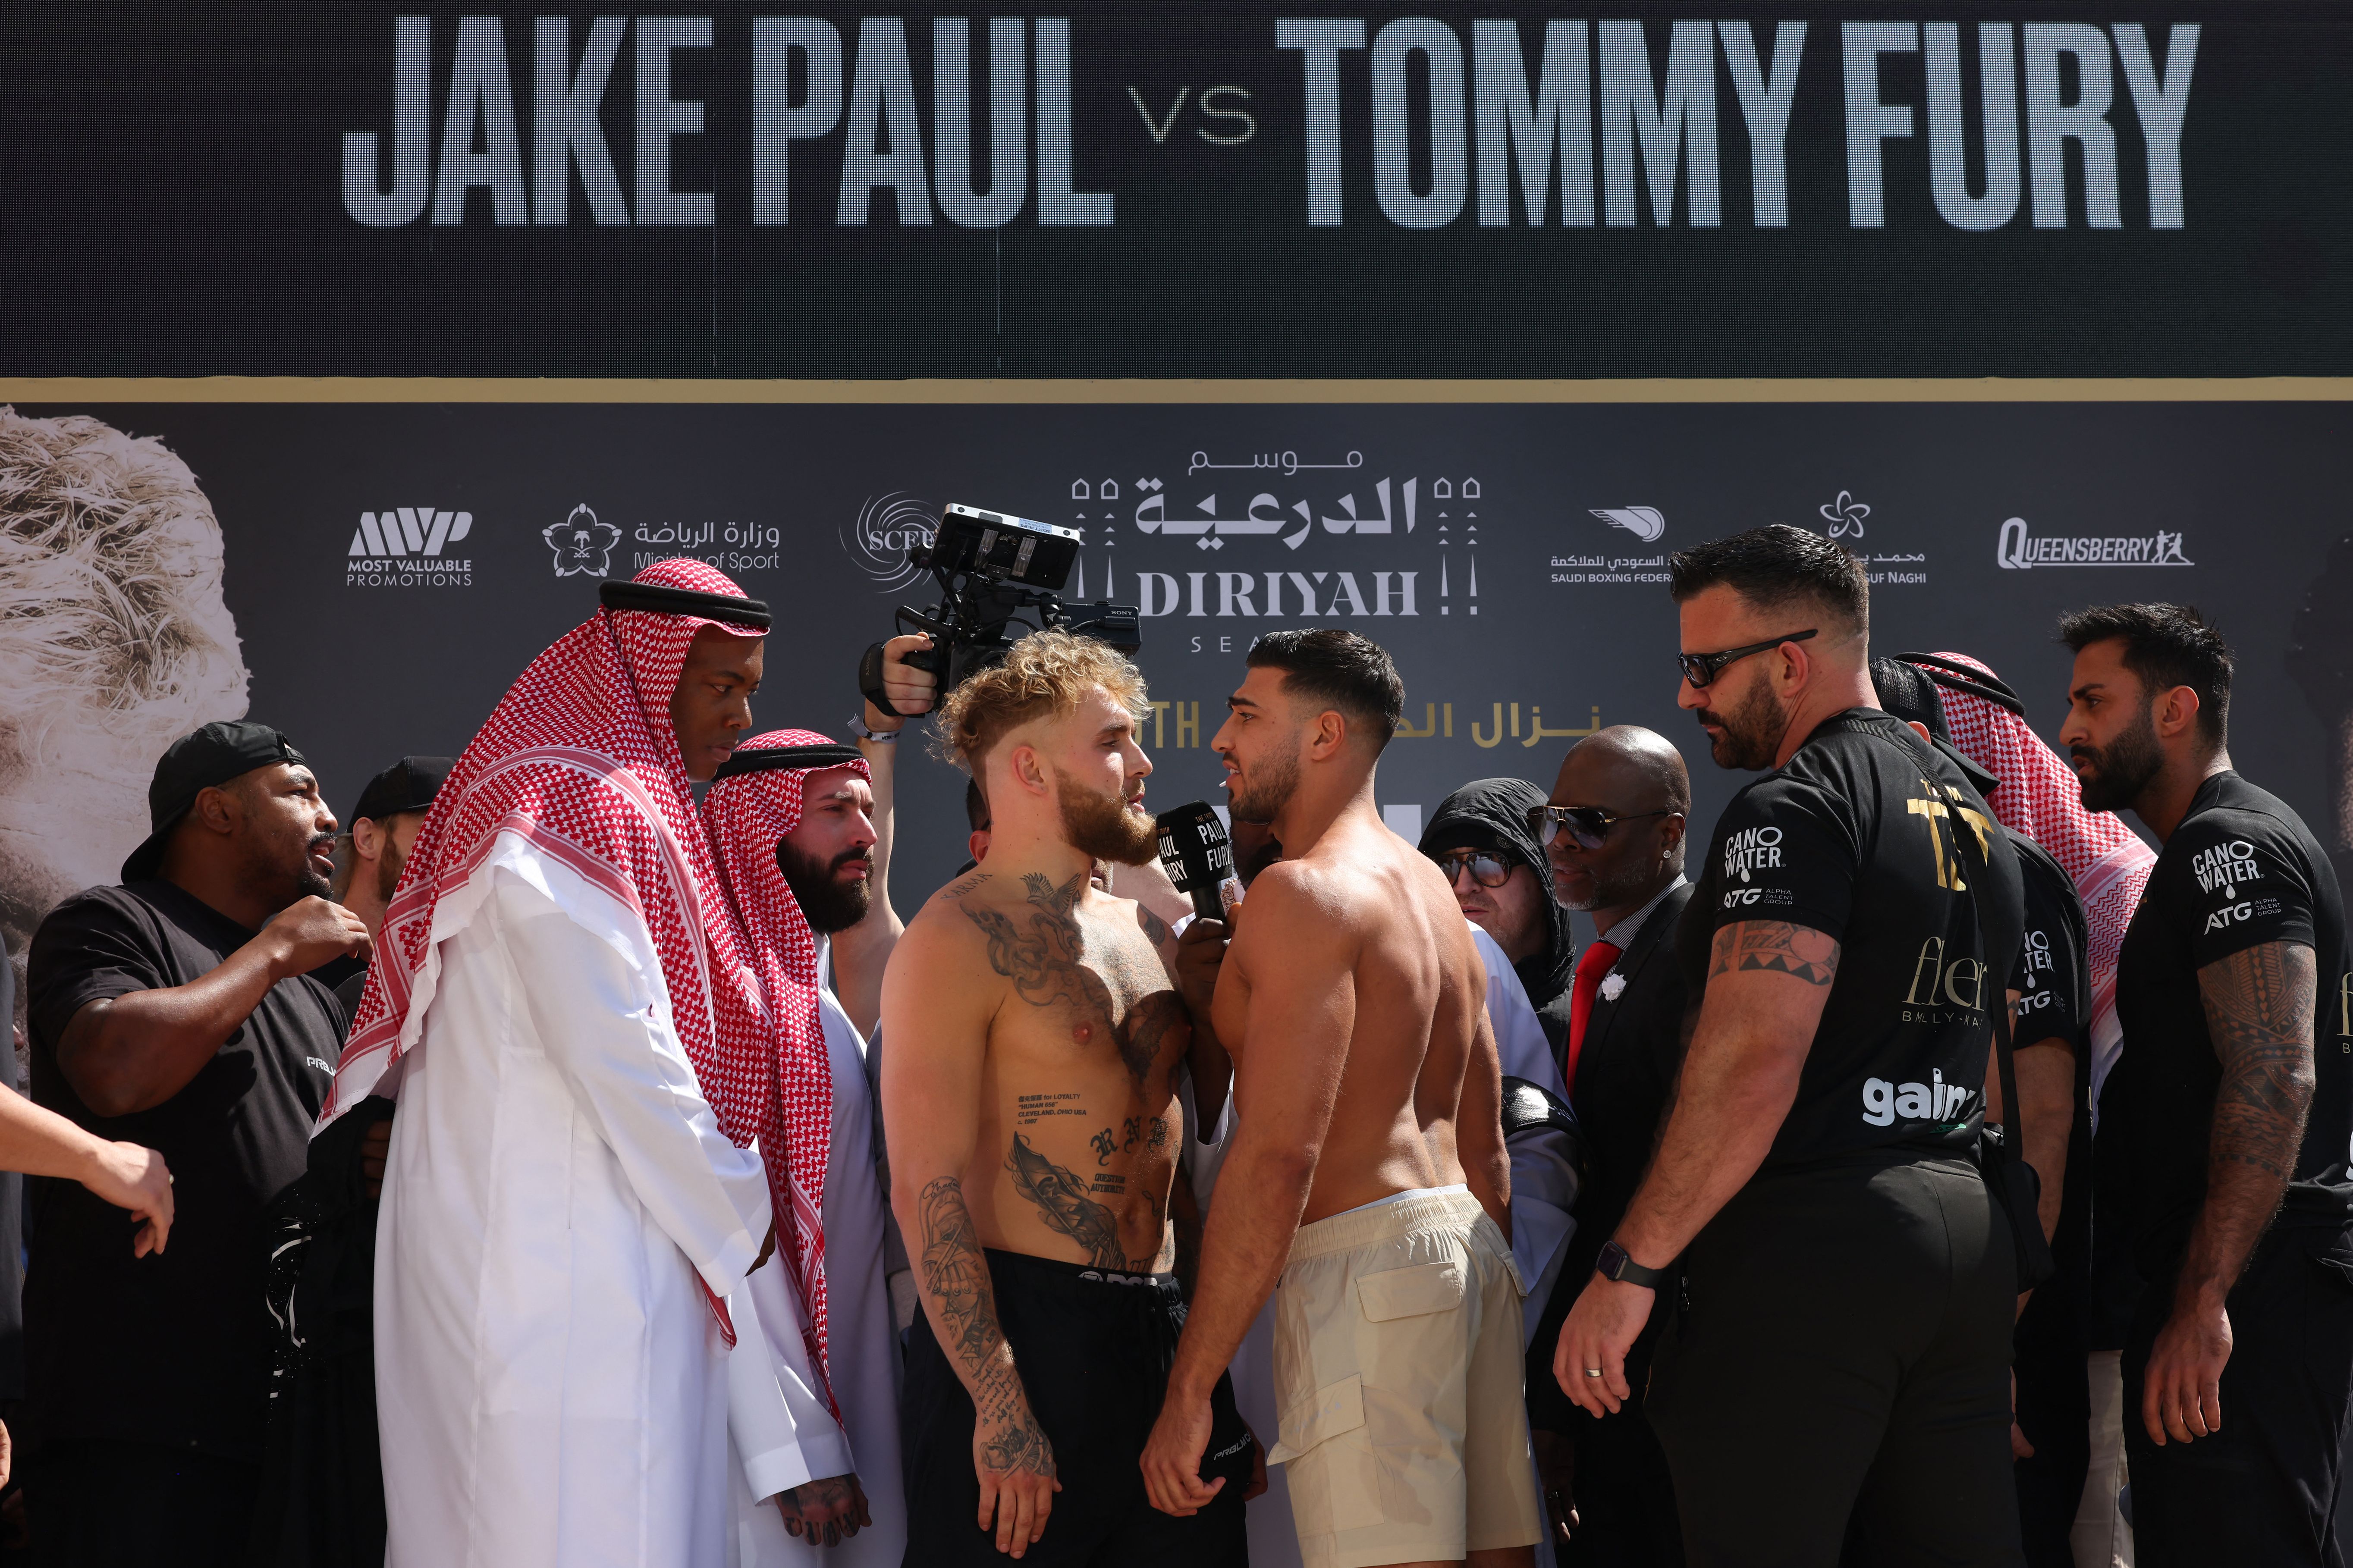 Jake Paul, Tommy Fury to fight in Saudi Arabia